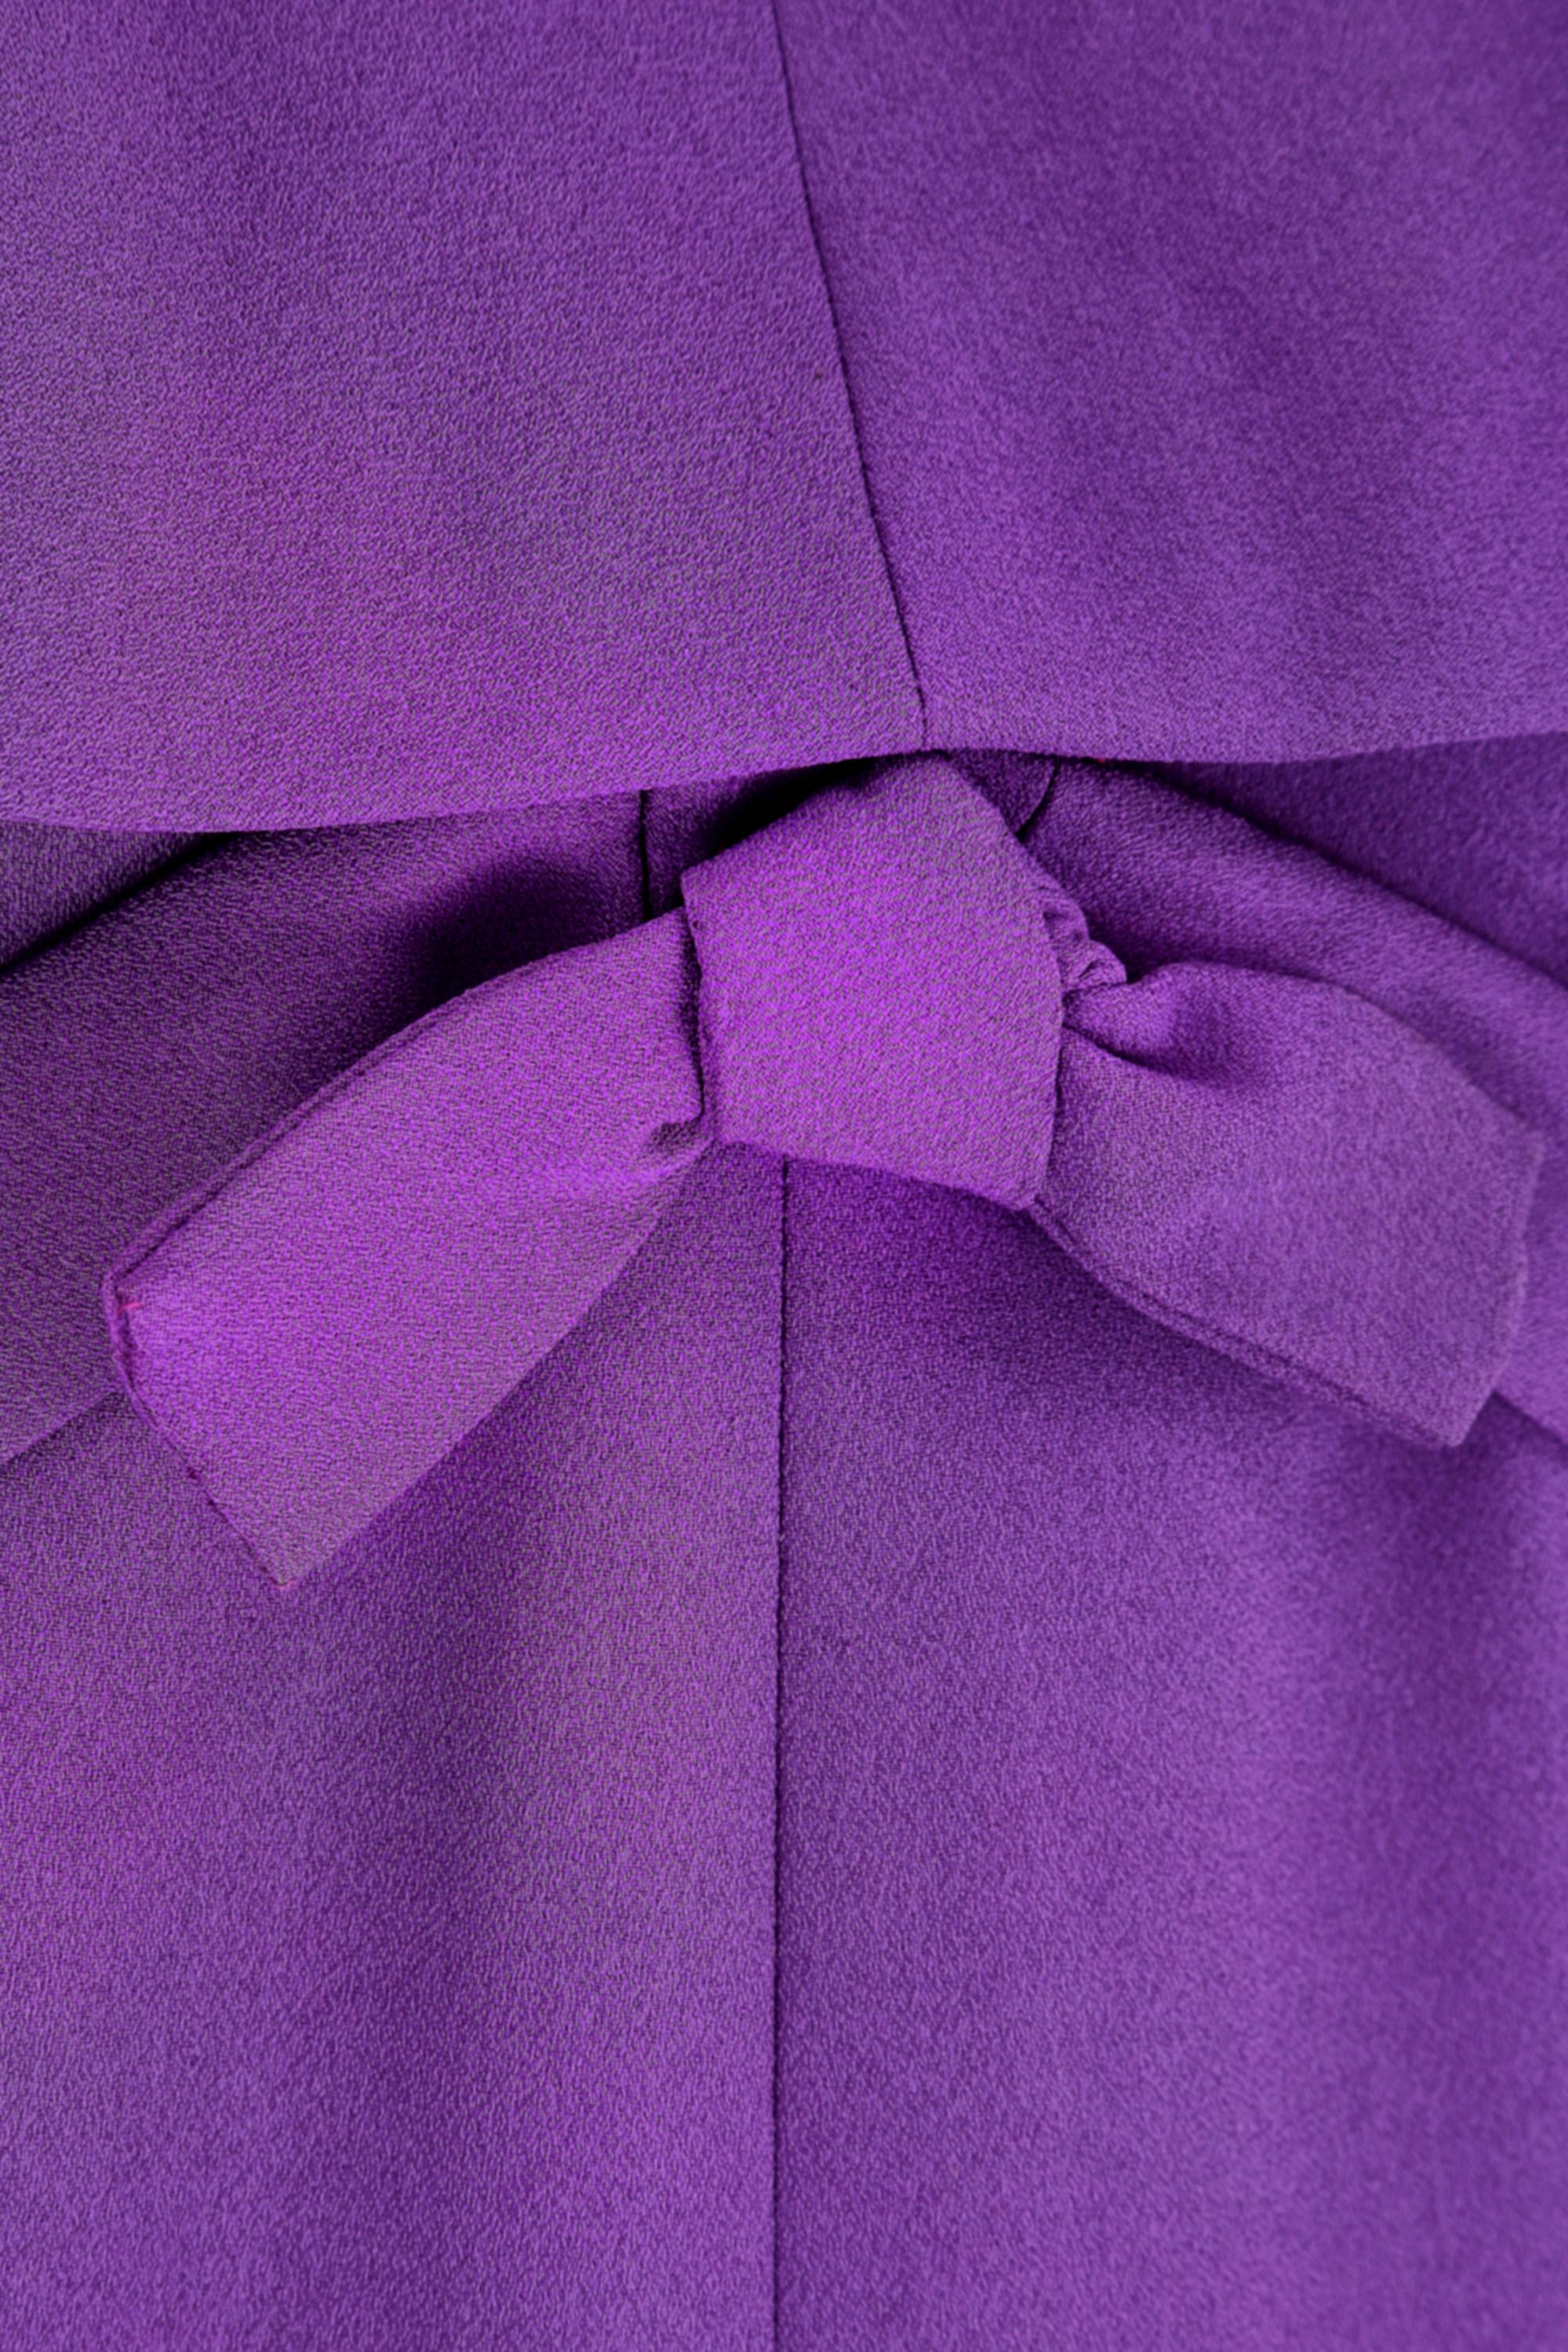 1960s Rahvis Couture Purple Crepe Mod Dress For Sale 1